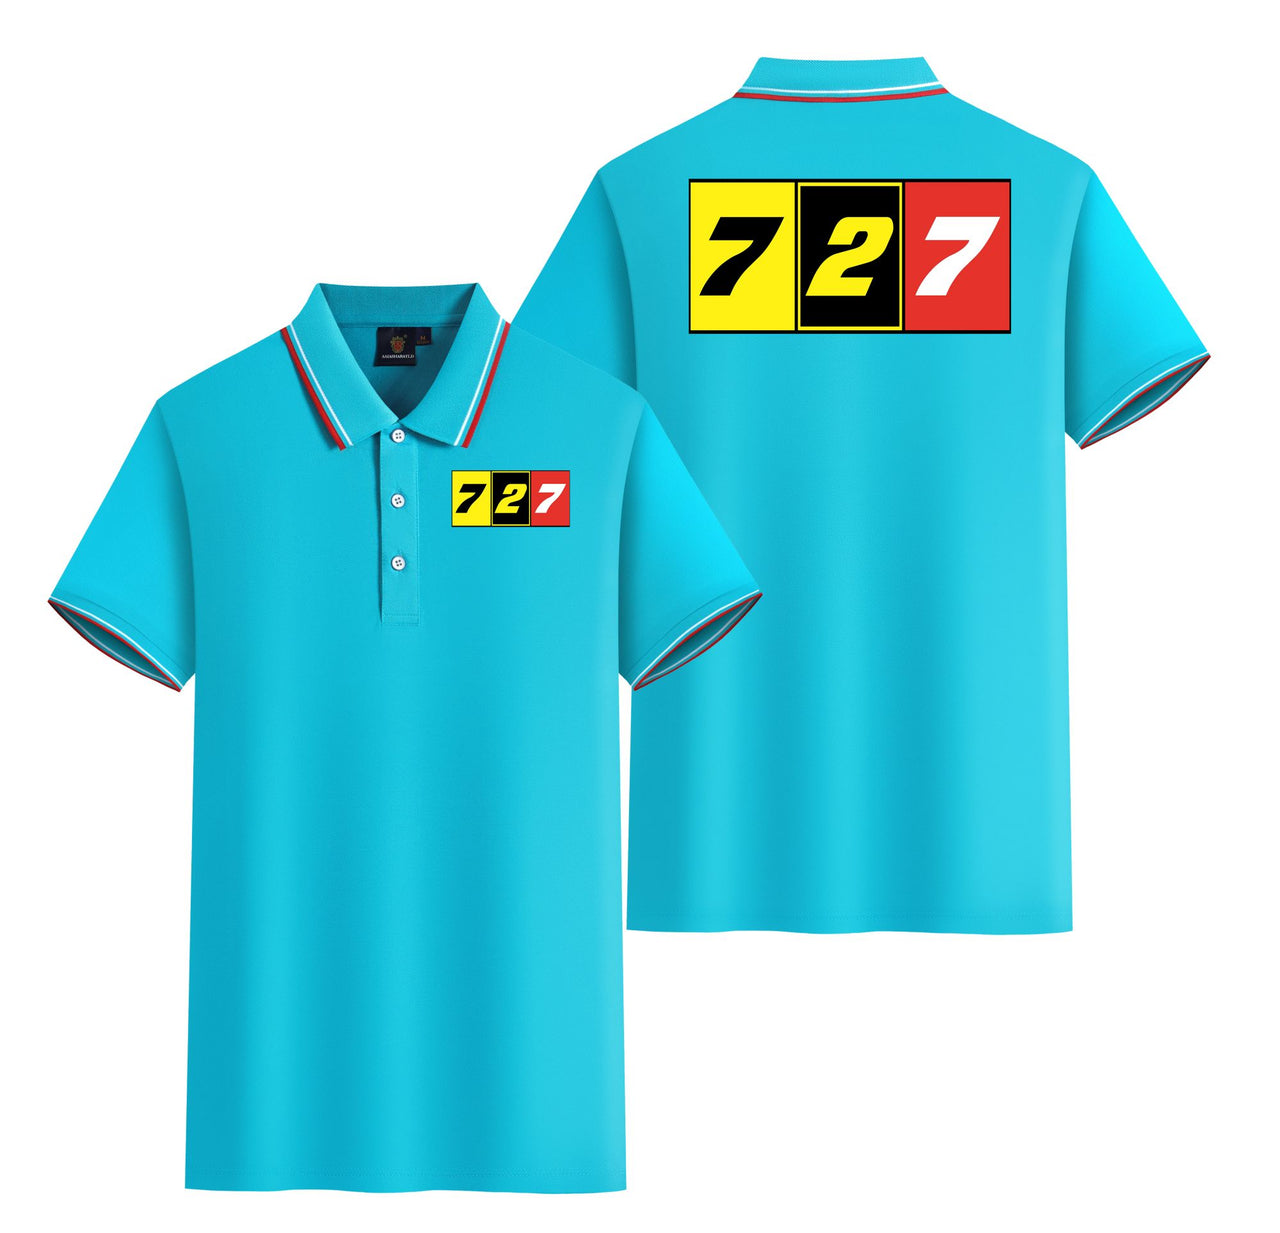 Flat Colourful 727 Designed Stylish Polo T-Shirts (Double-Side)